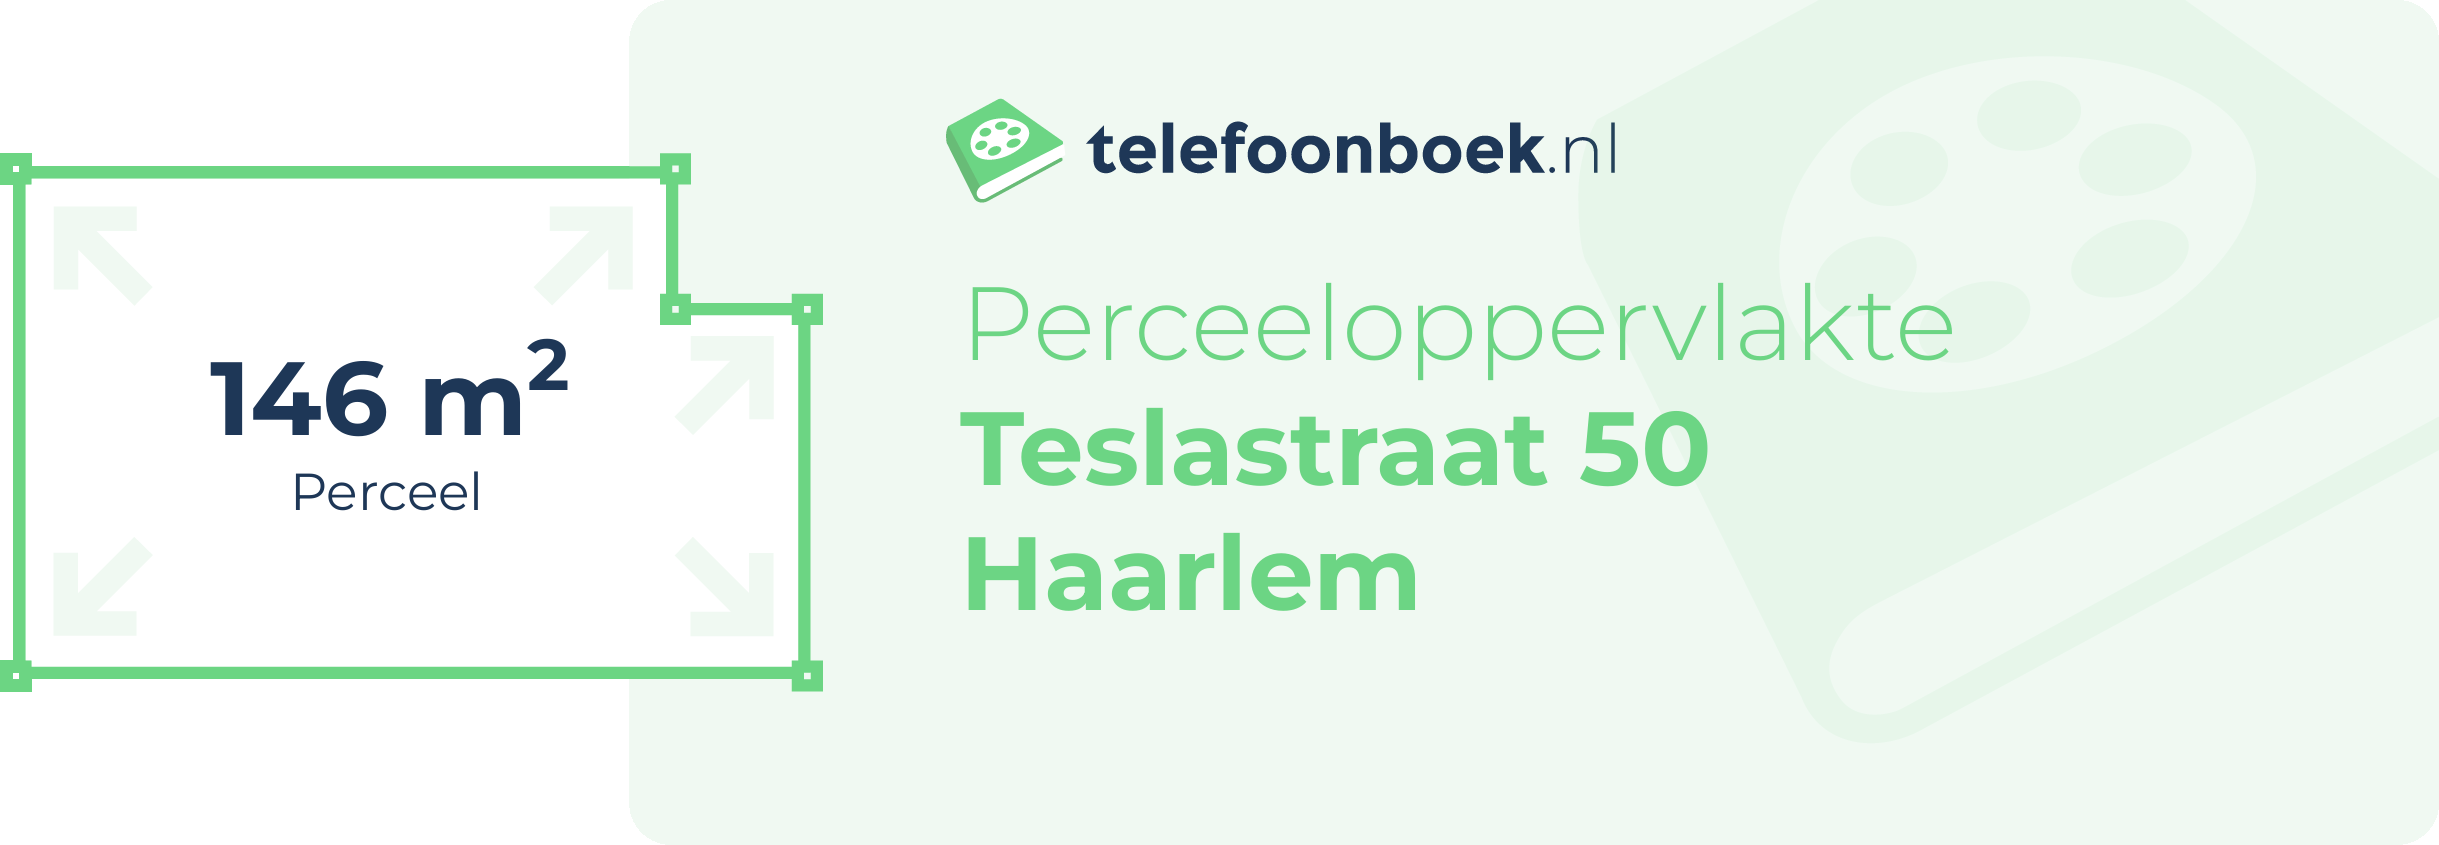 Perceeloppervlakte Teslastraat 50 Haarlem